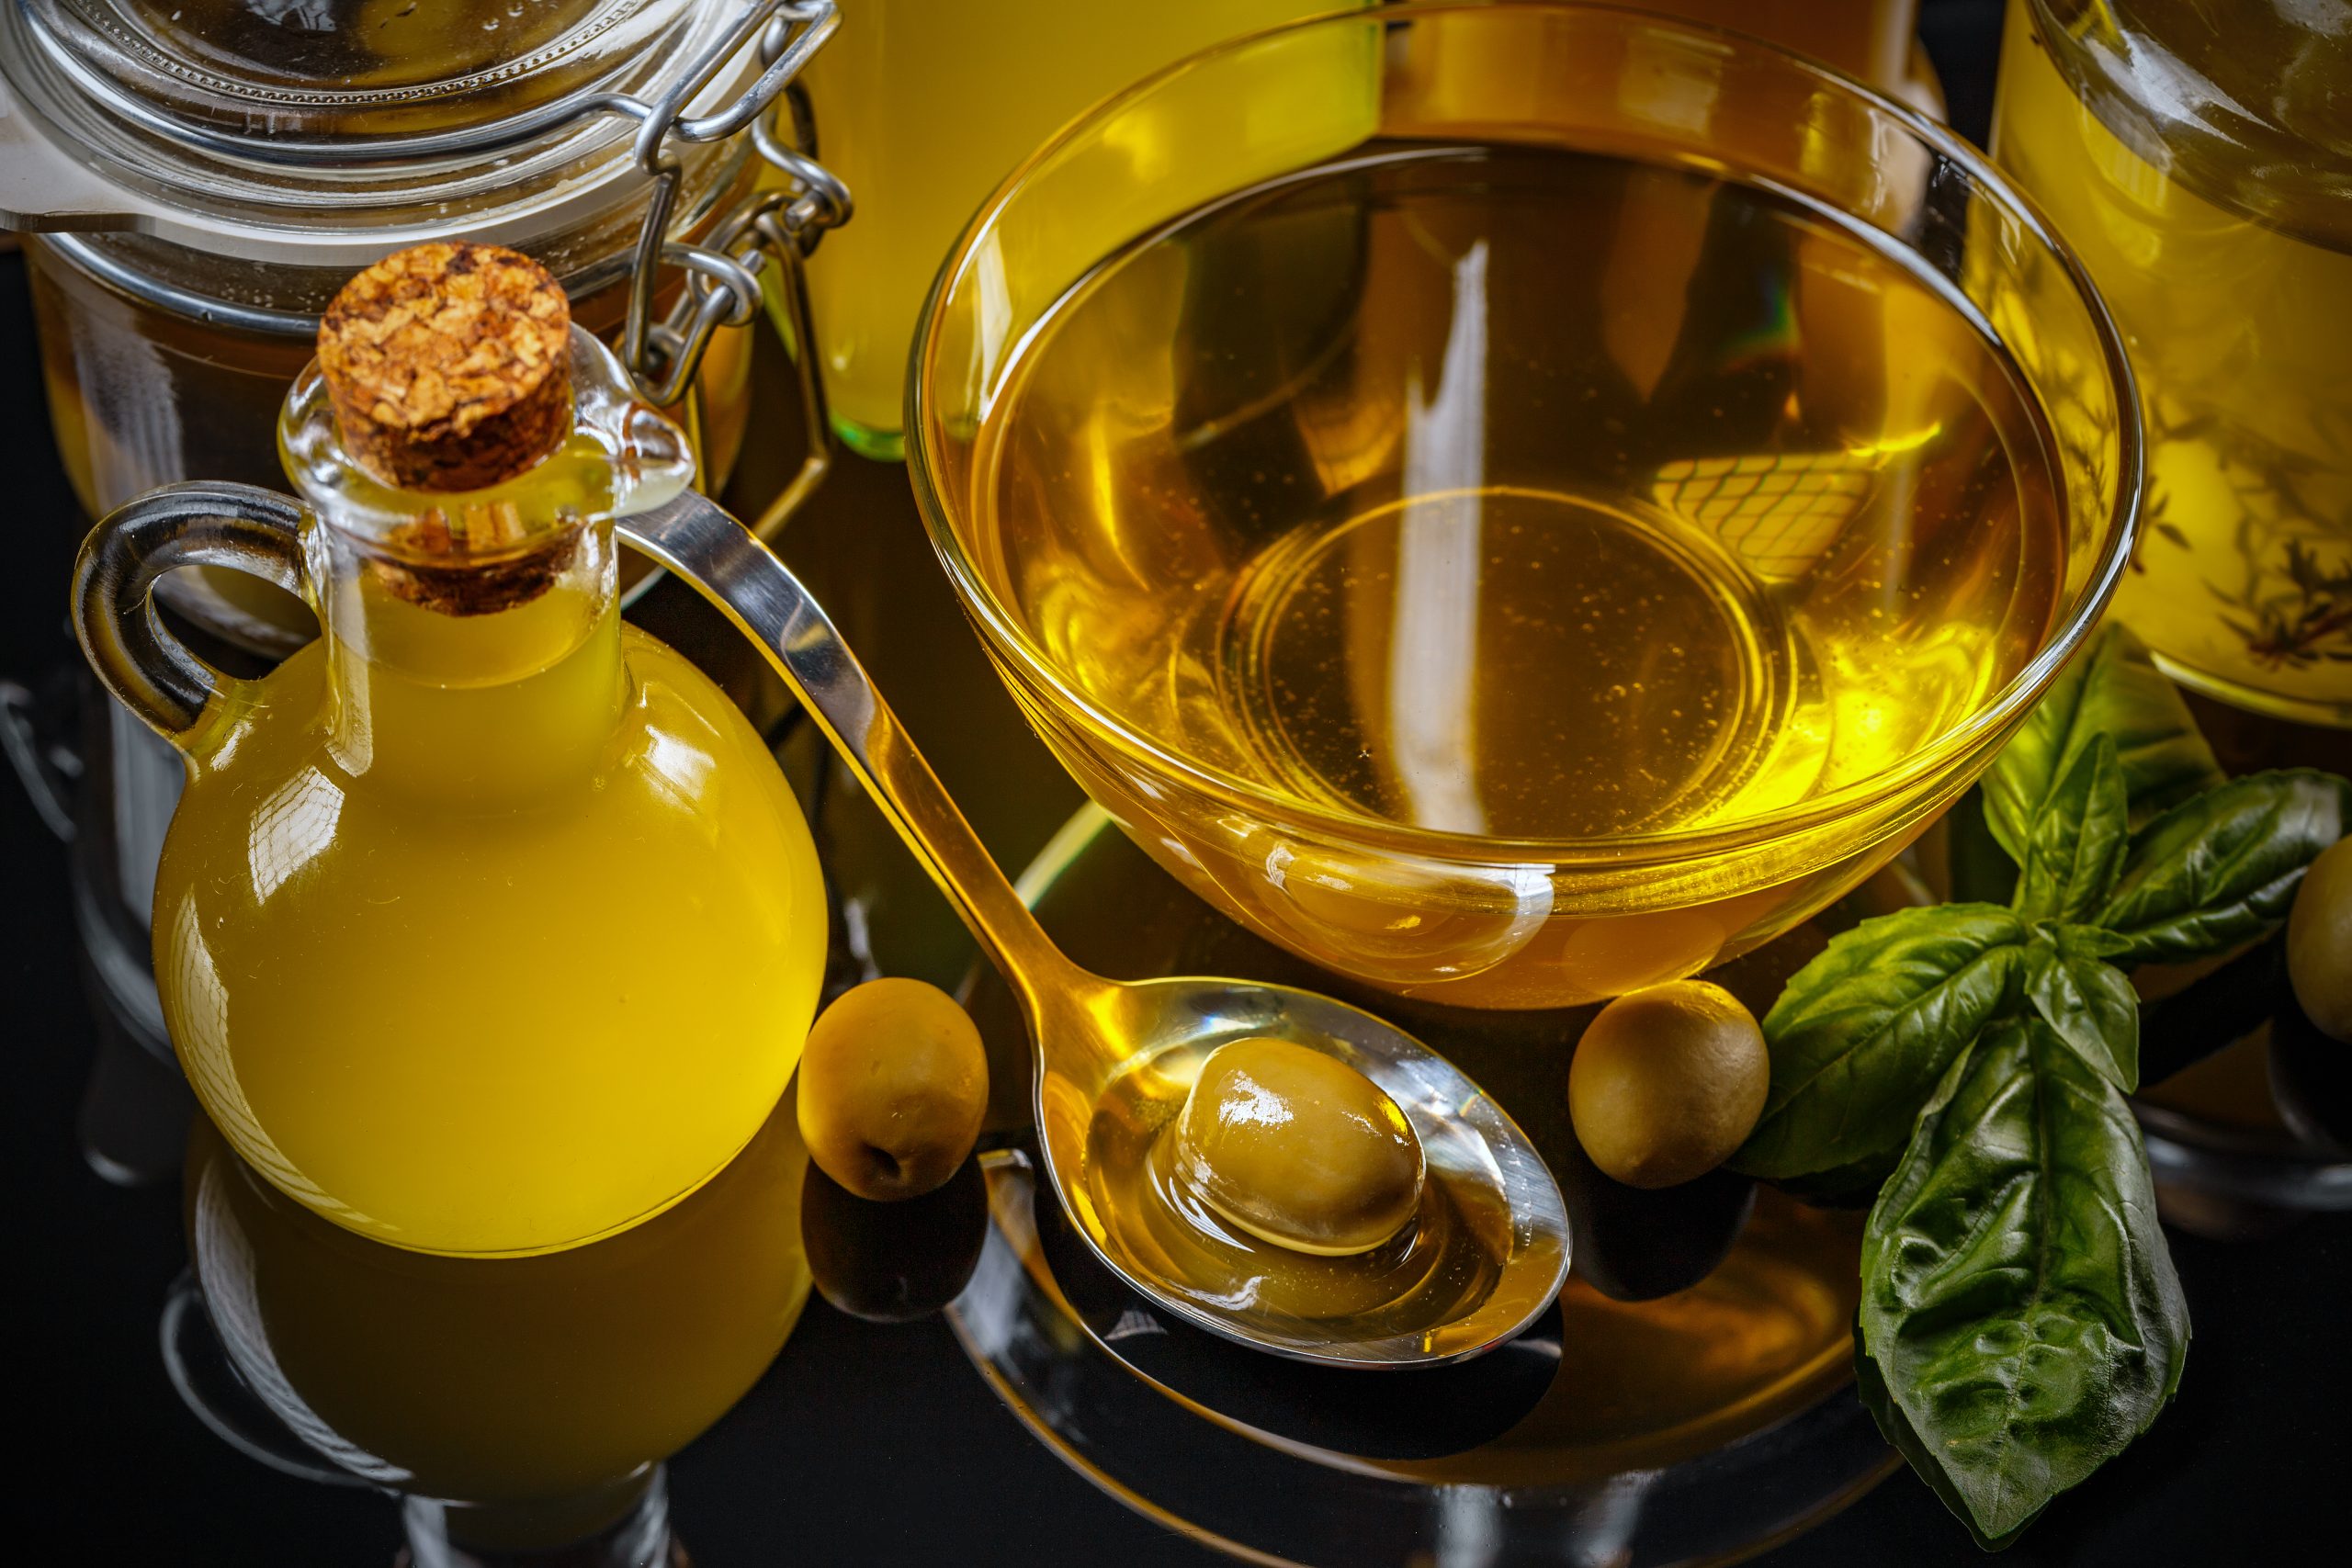 Motivo de la subida en el precio aceite de oliva